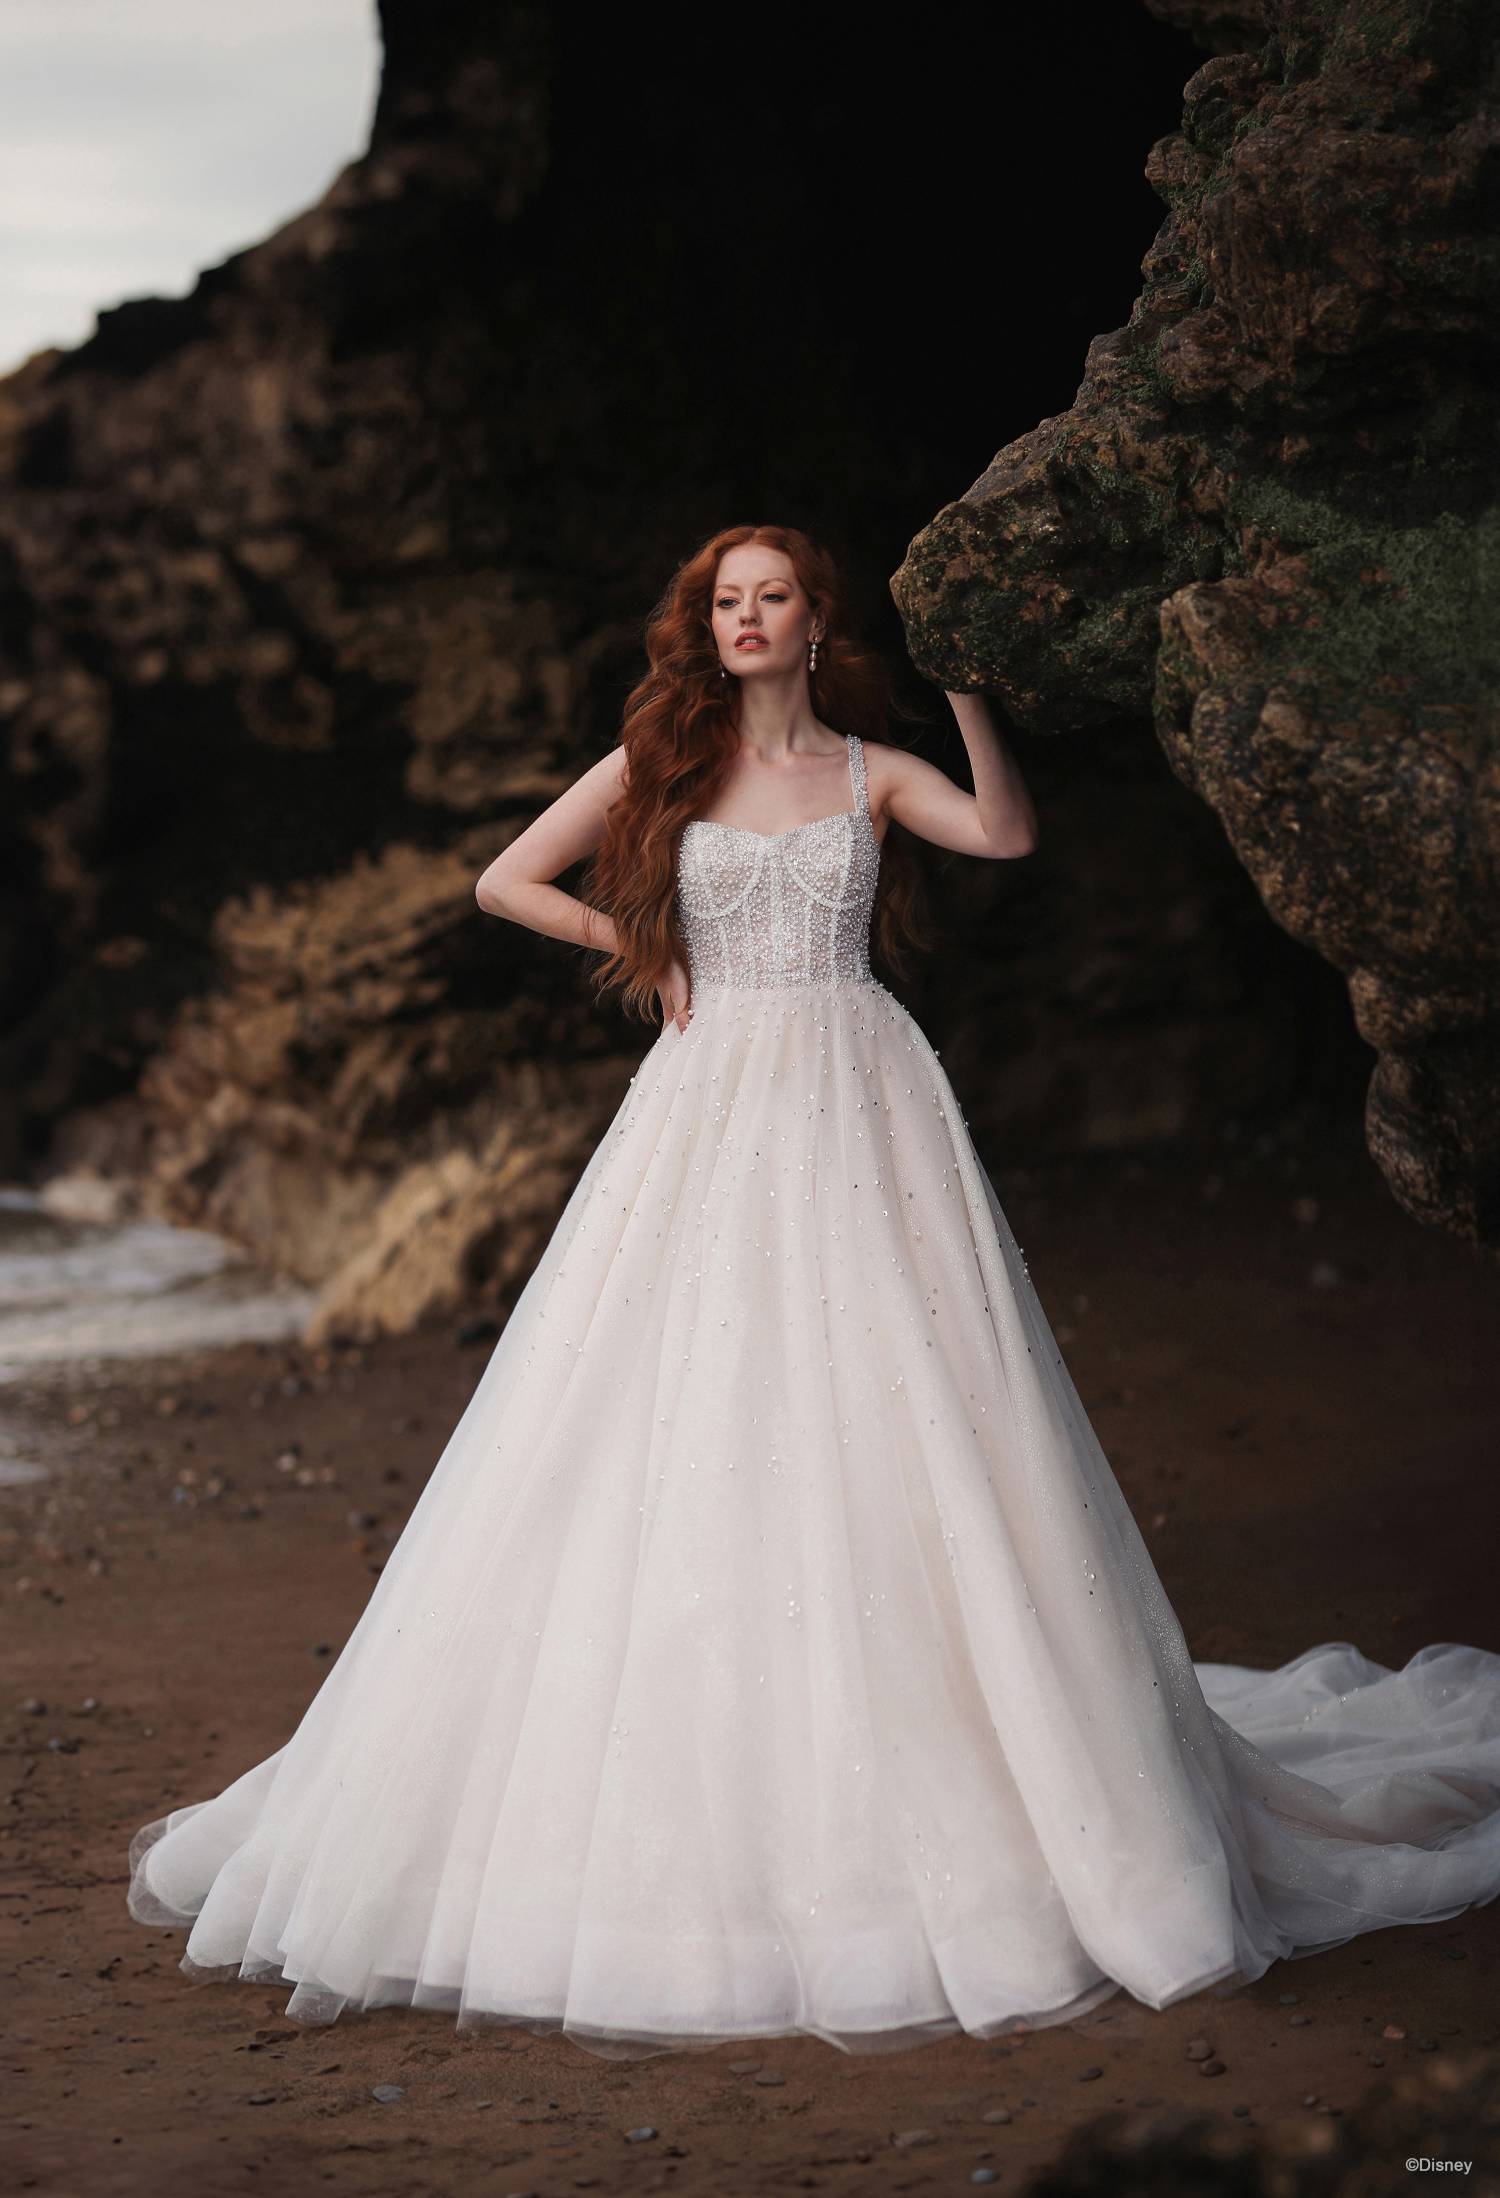 Wedding Evening Prom Dress White Ivory UK Size 6-14,EU34-42,US4-12 UK STOCK  | eBay